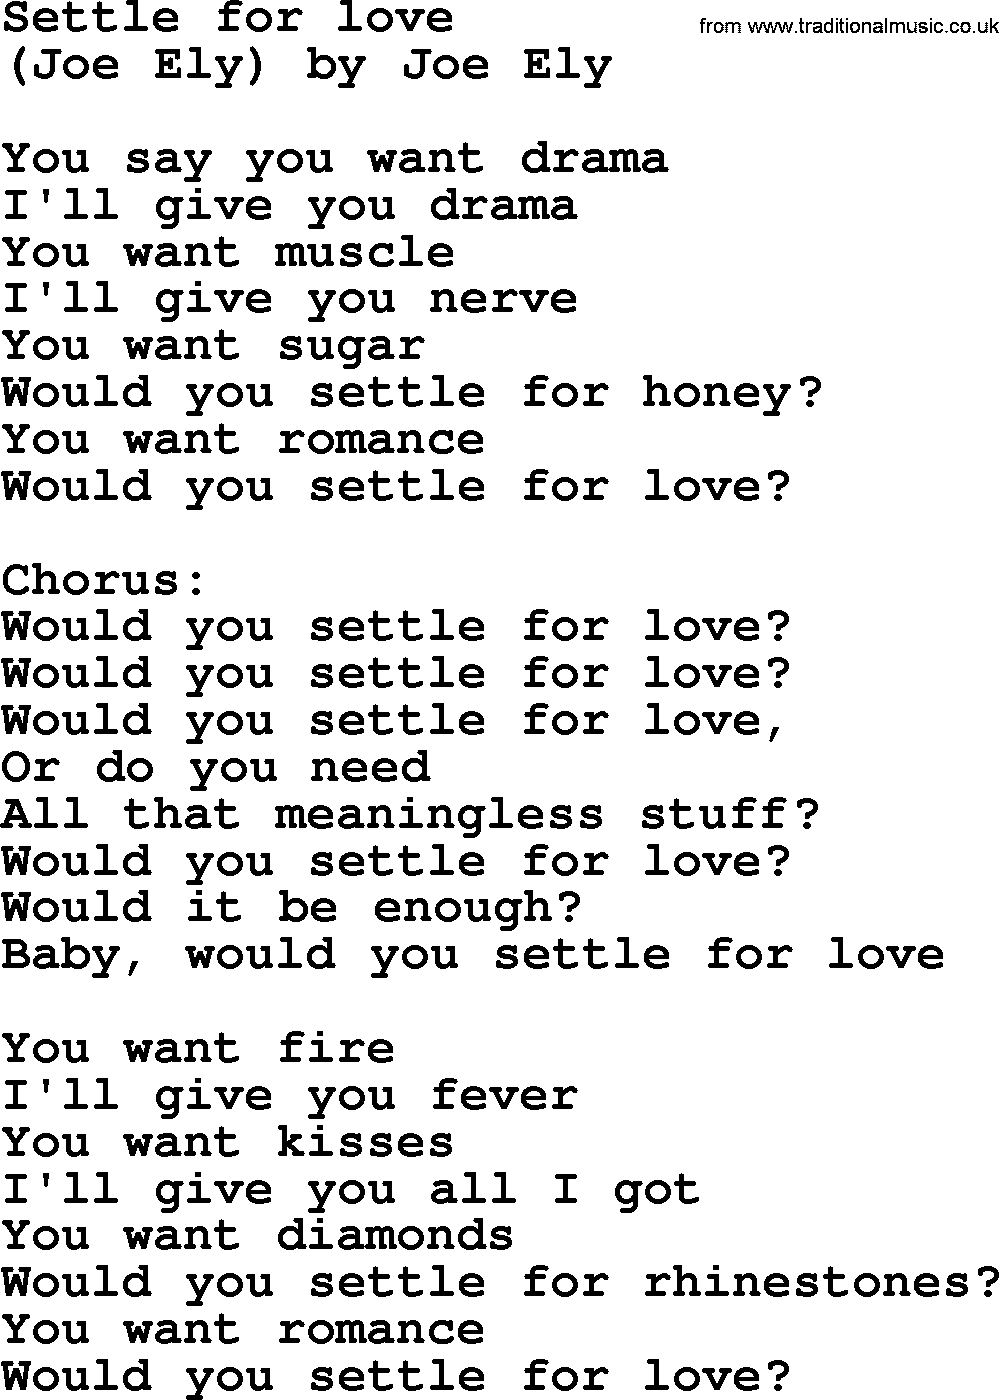 Bruce Springsteen song: Settle For Love lyrics